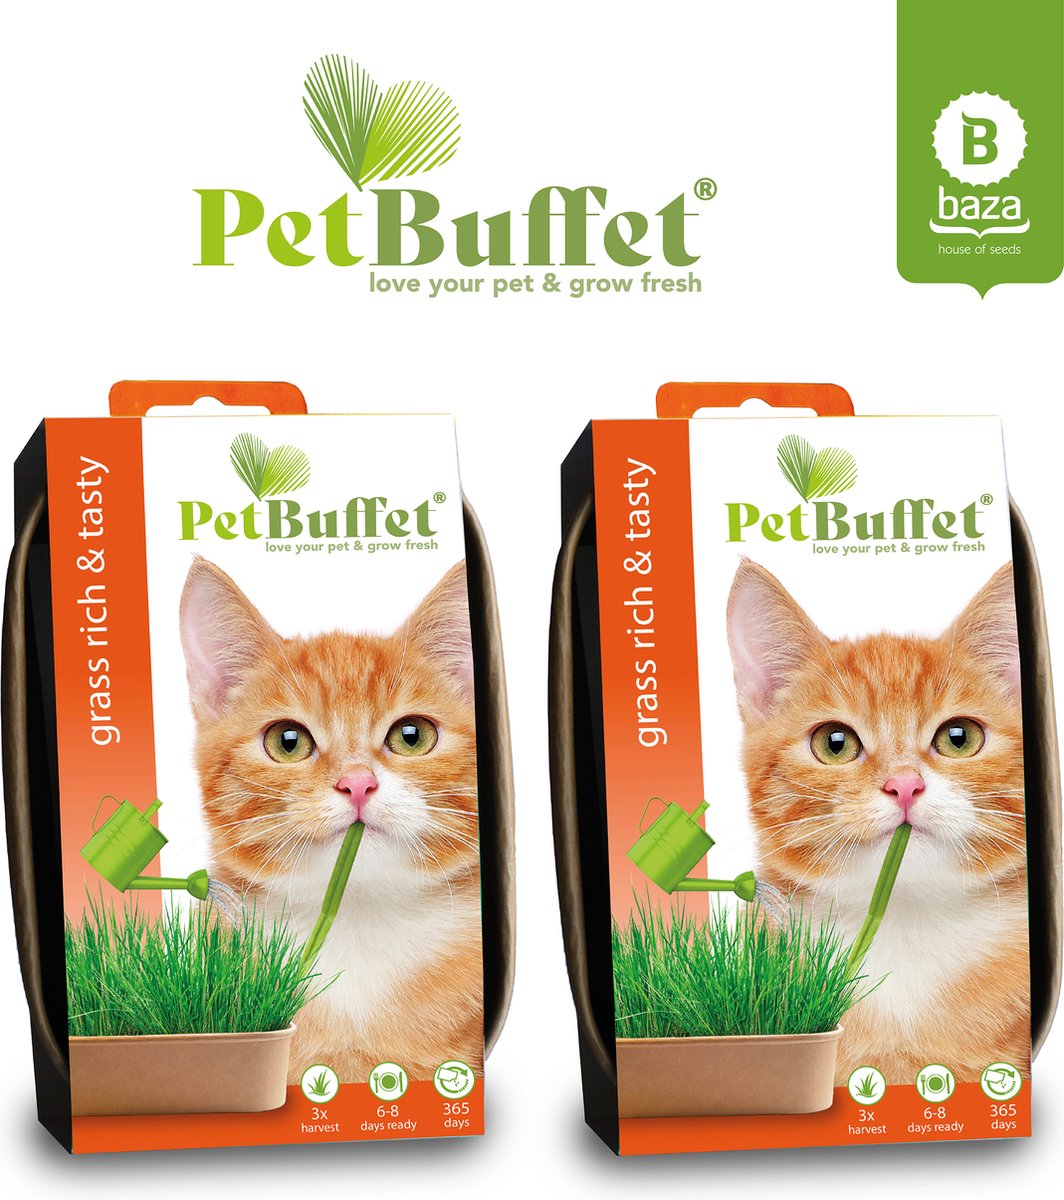 Pet-Buffet herbe riche et savoureuse 6x croissance herbe pour votre chat